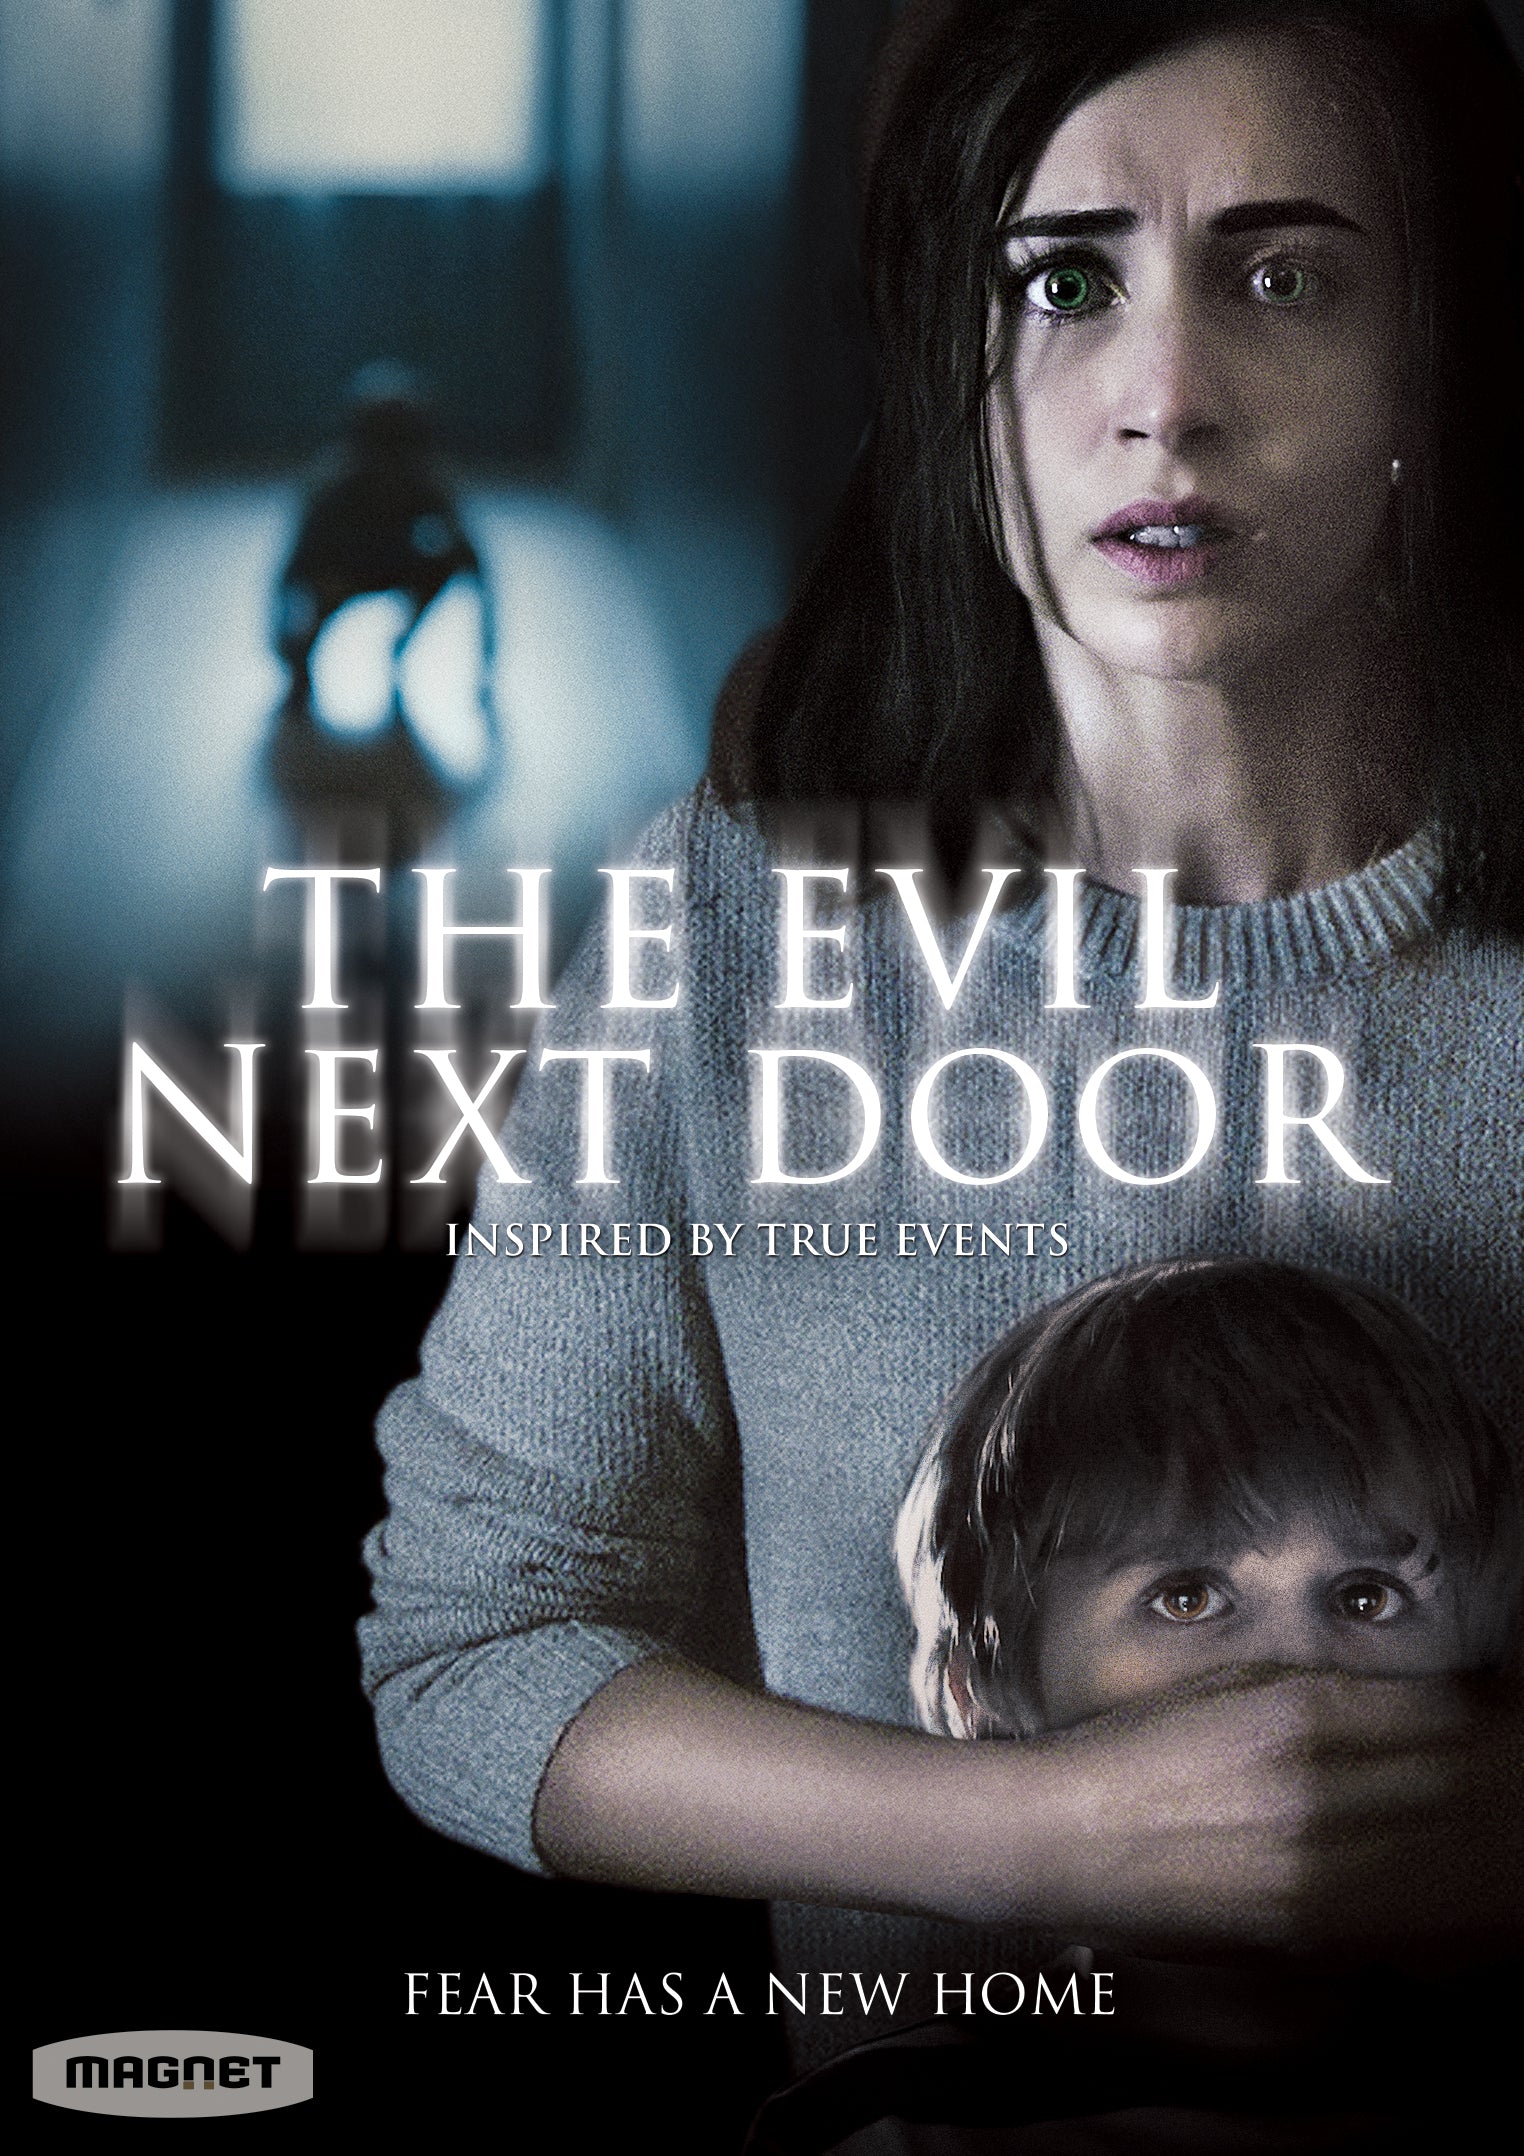 Evil Next Door cover art